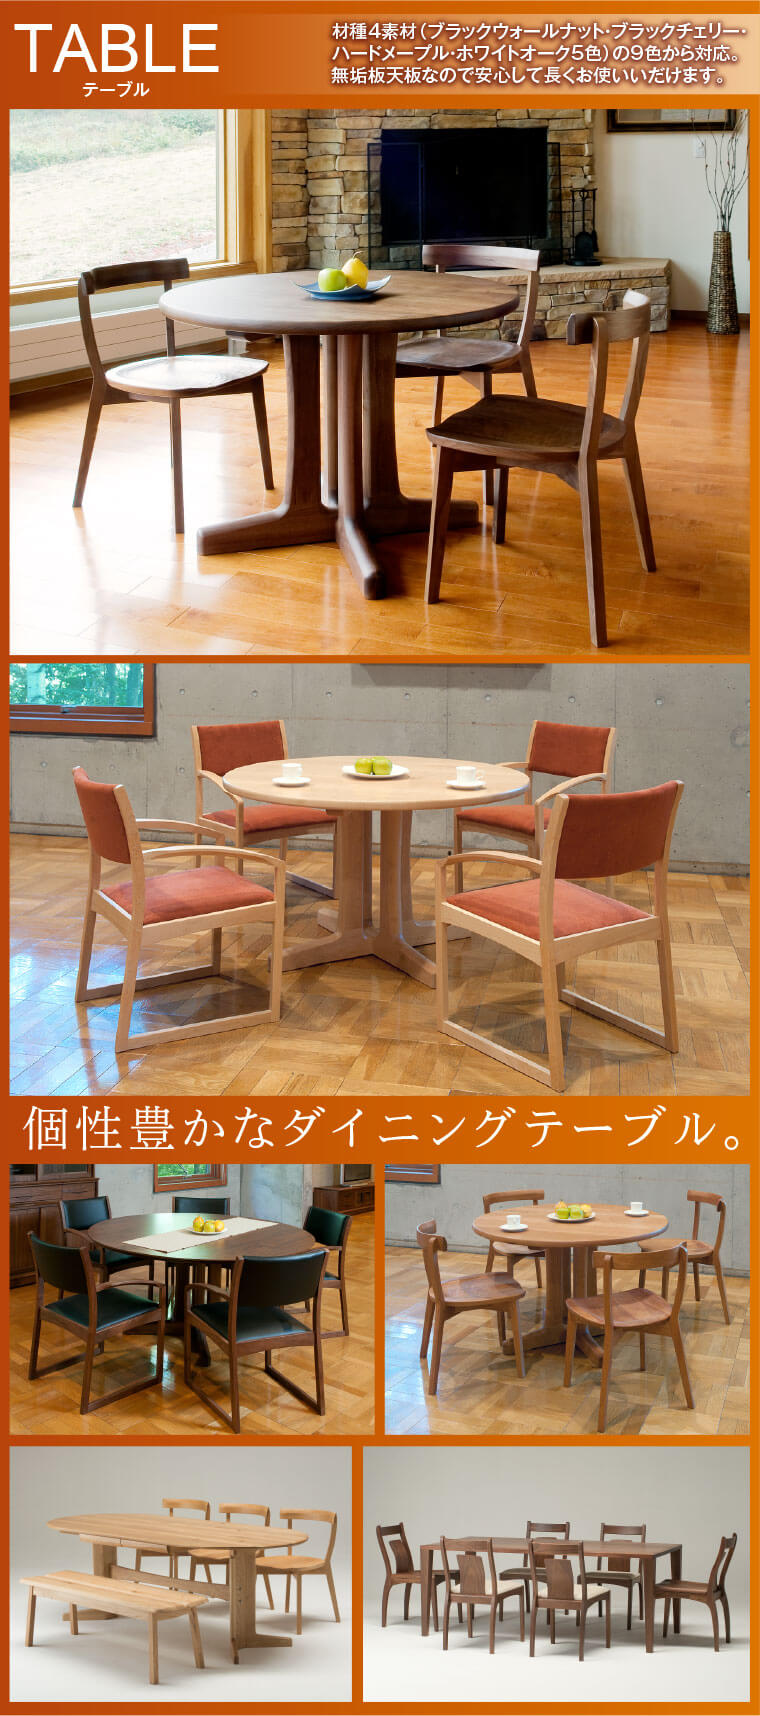 TABLE/テーブル